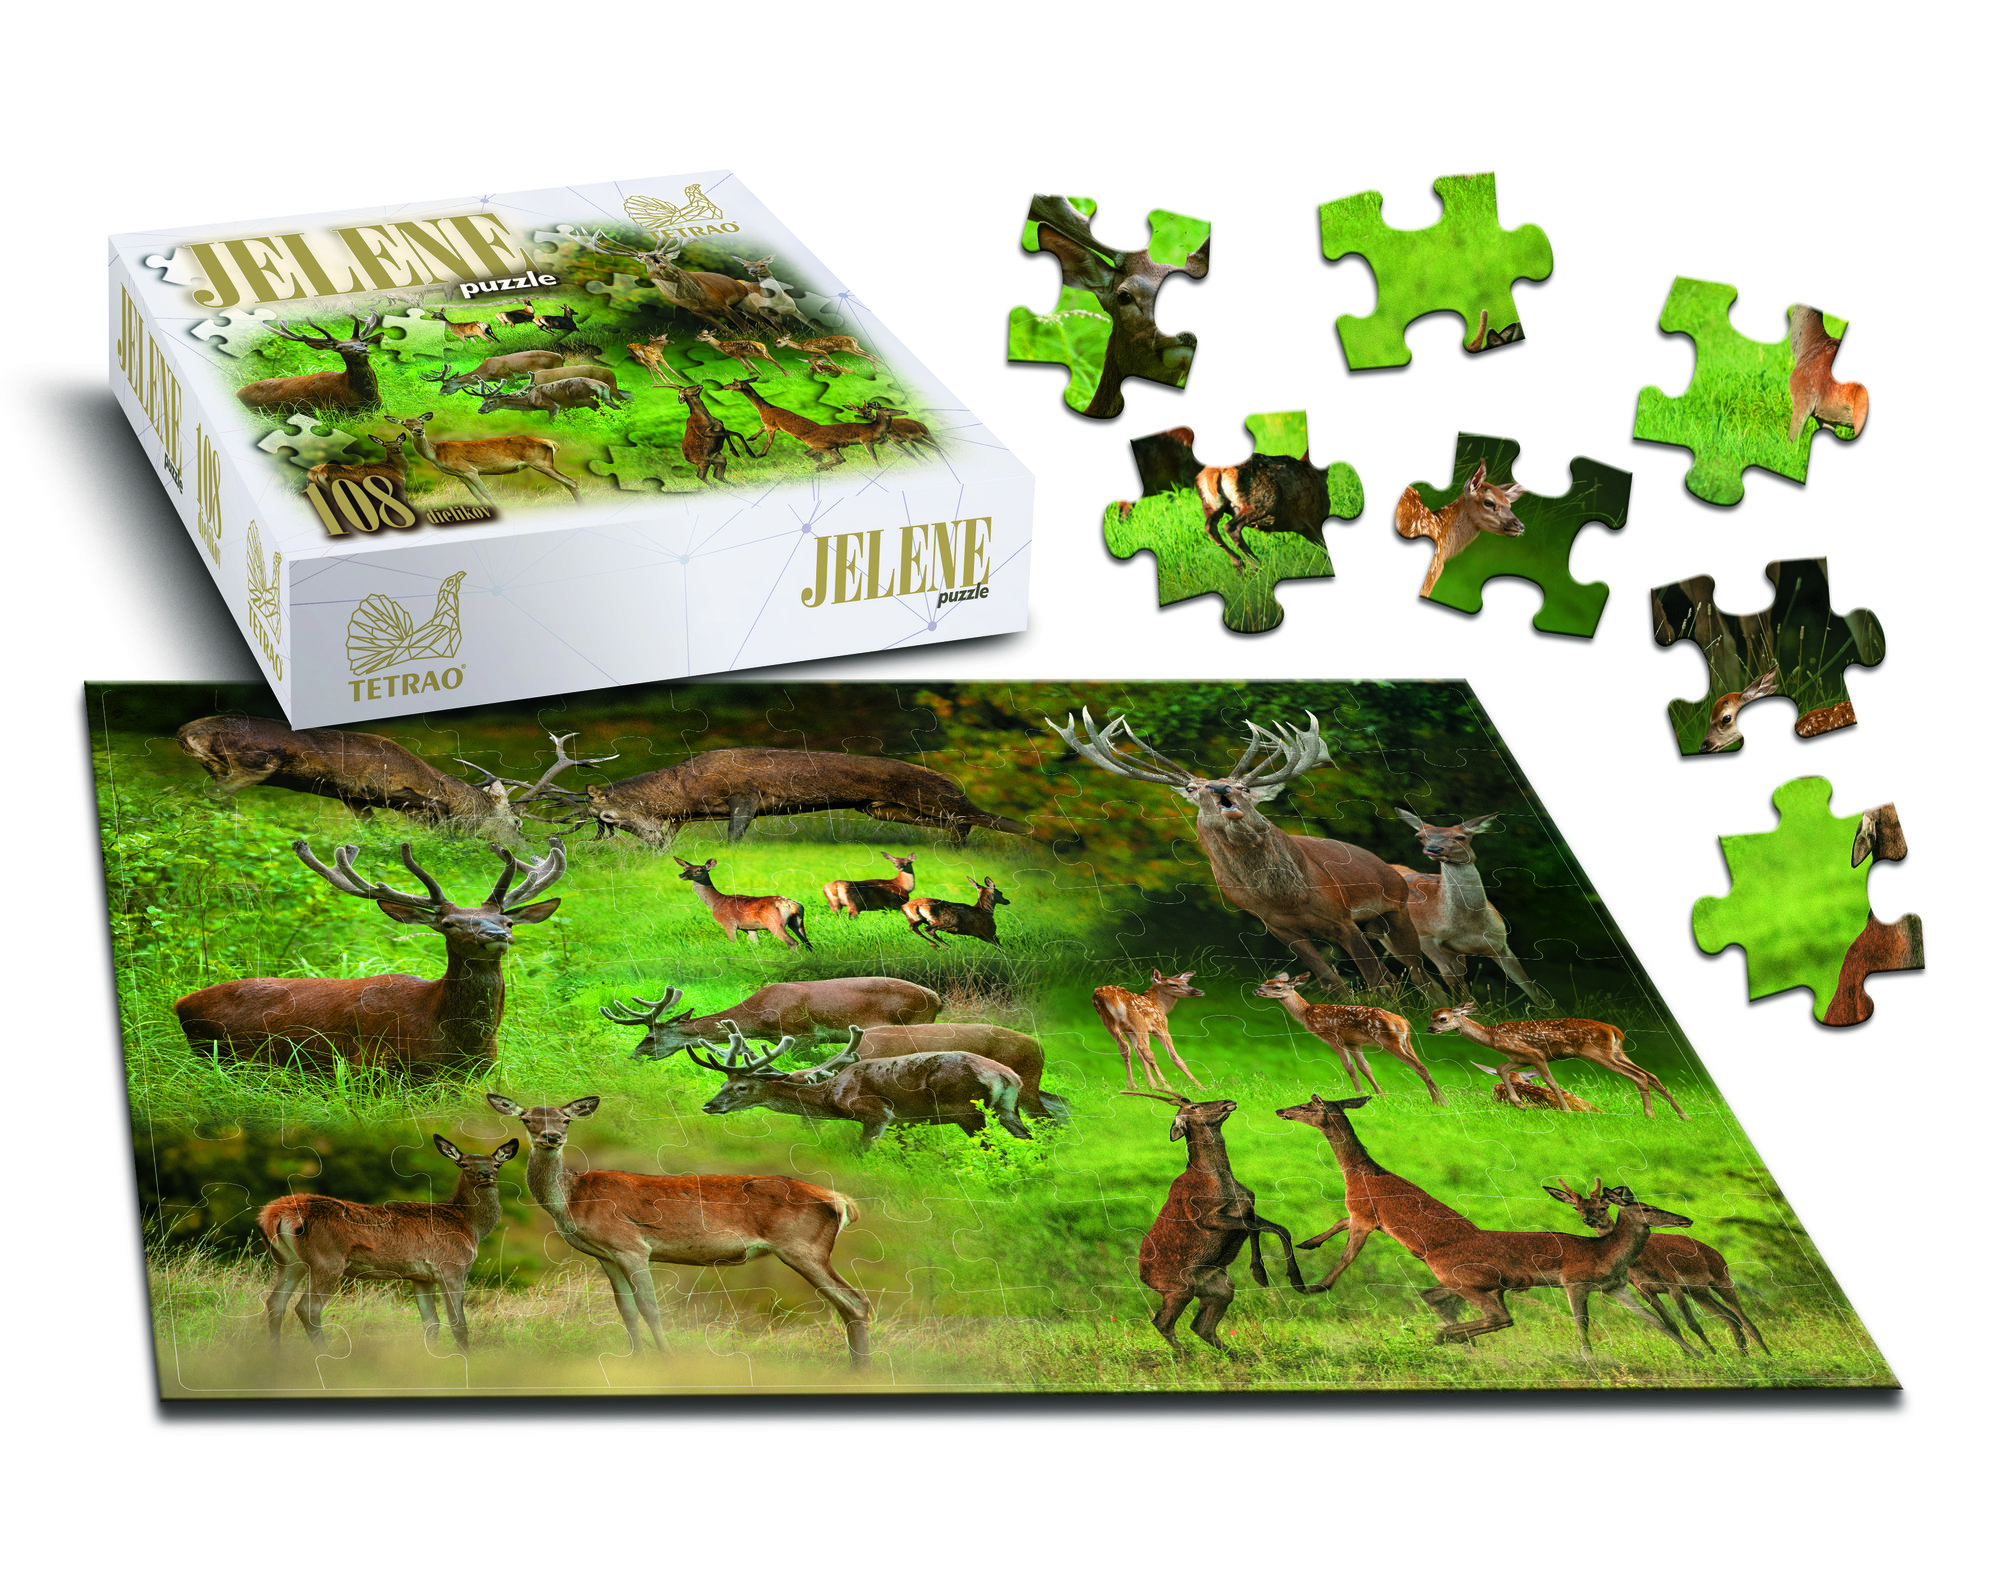 Poľovnícke puzzle TETRAO jelene, 108 dielikov  